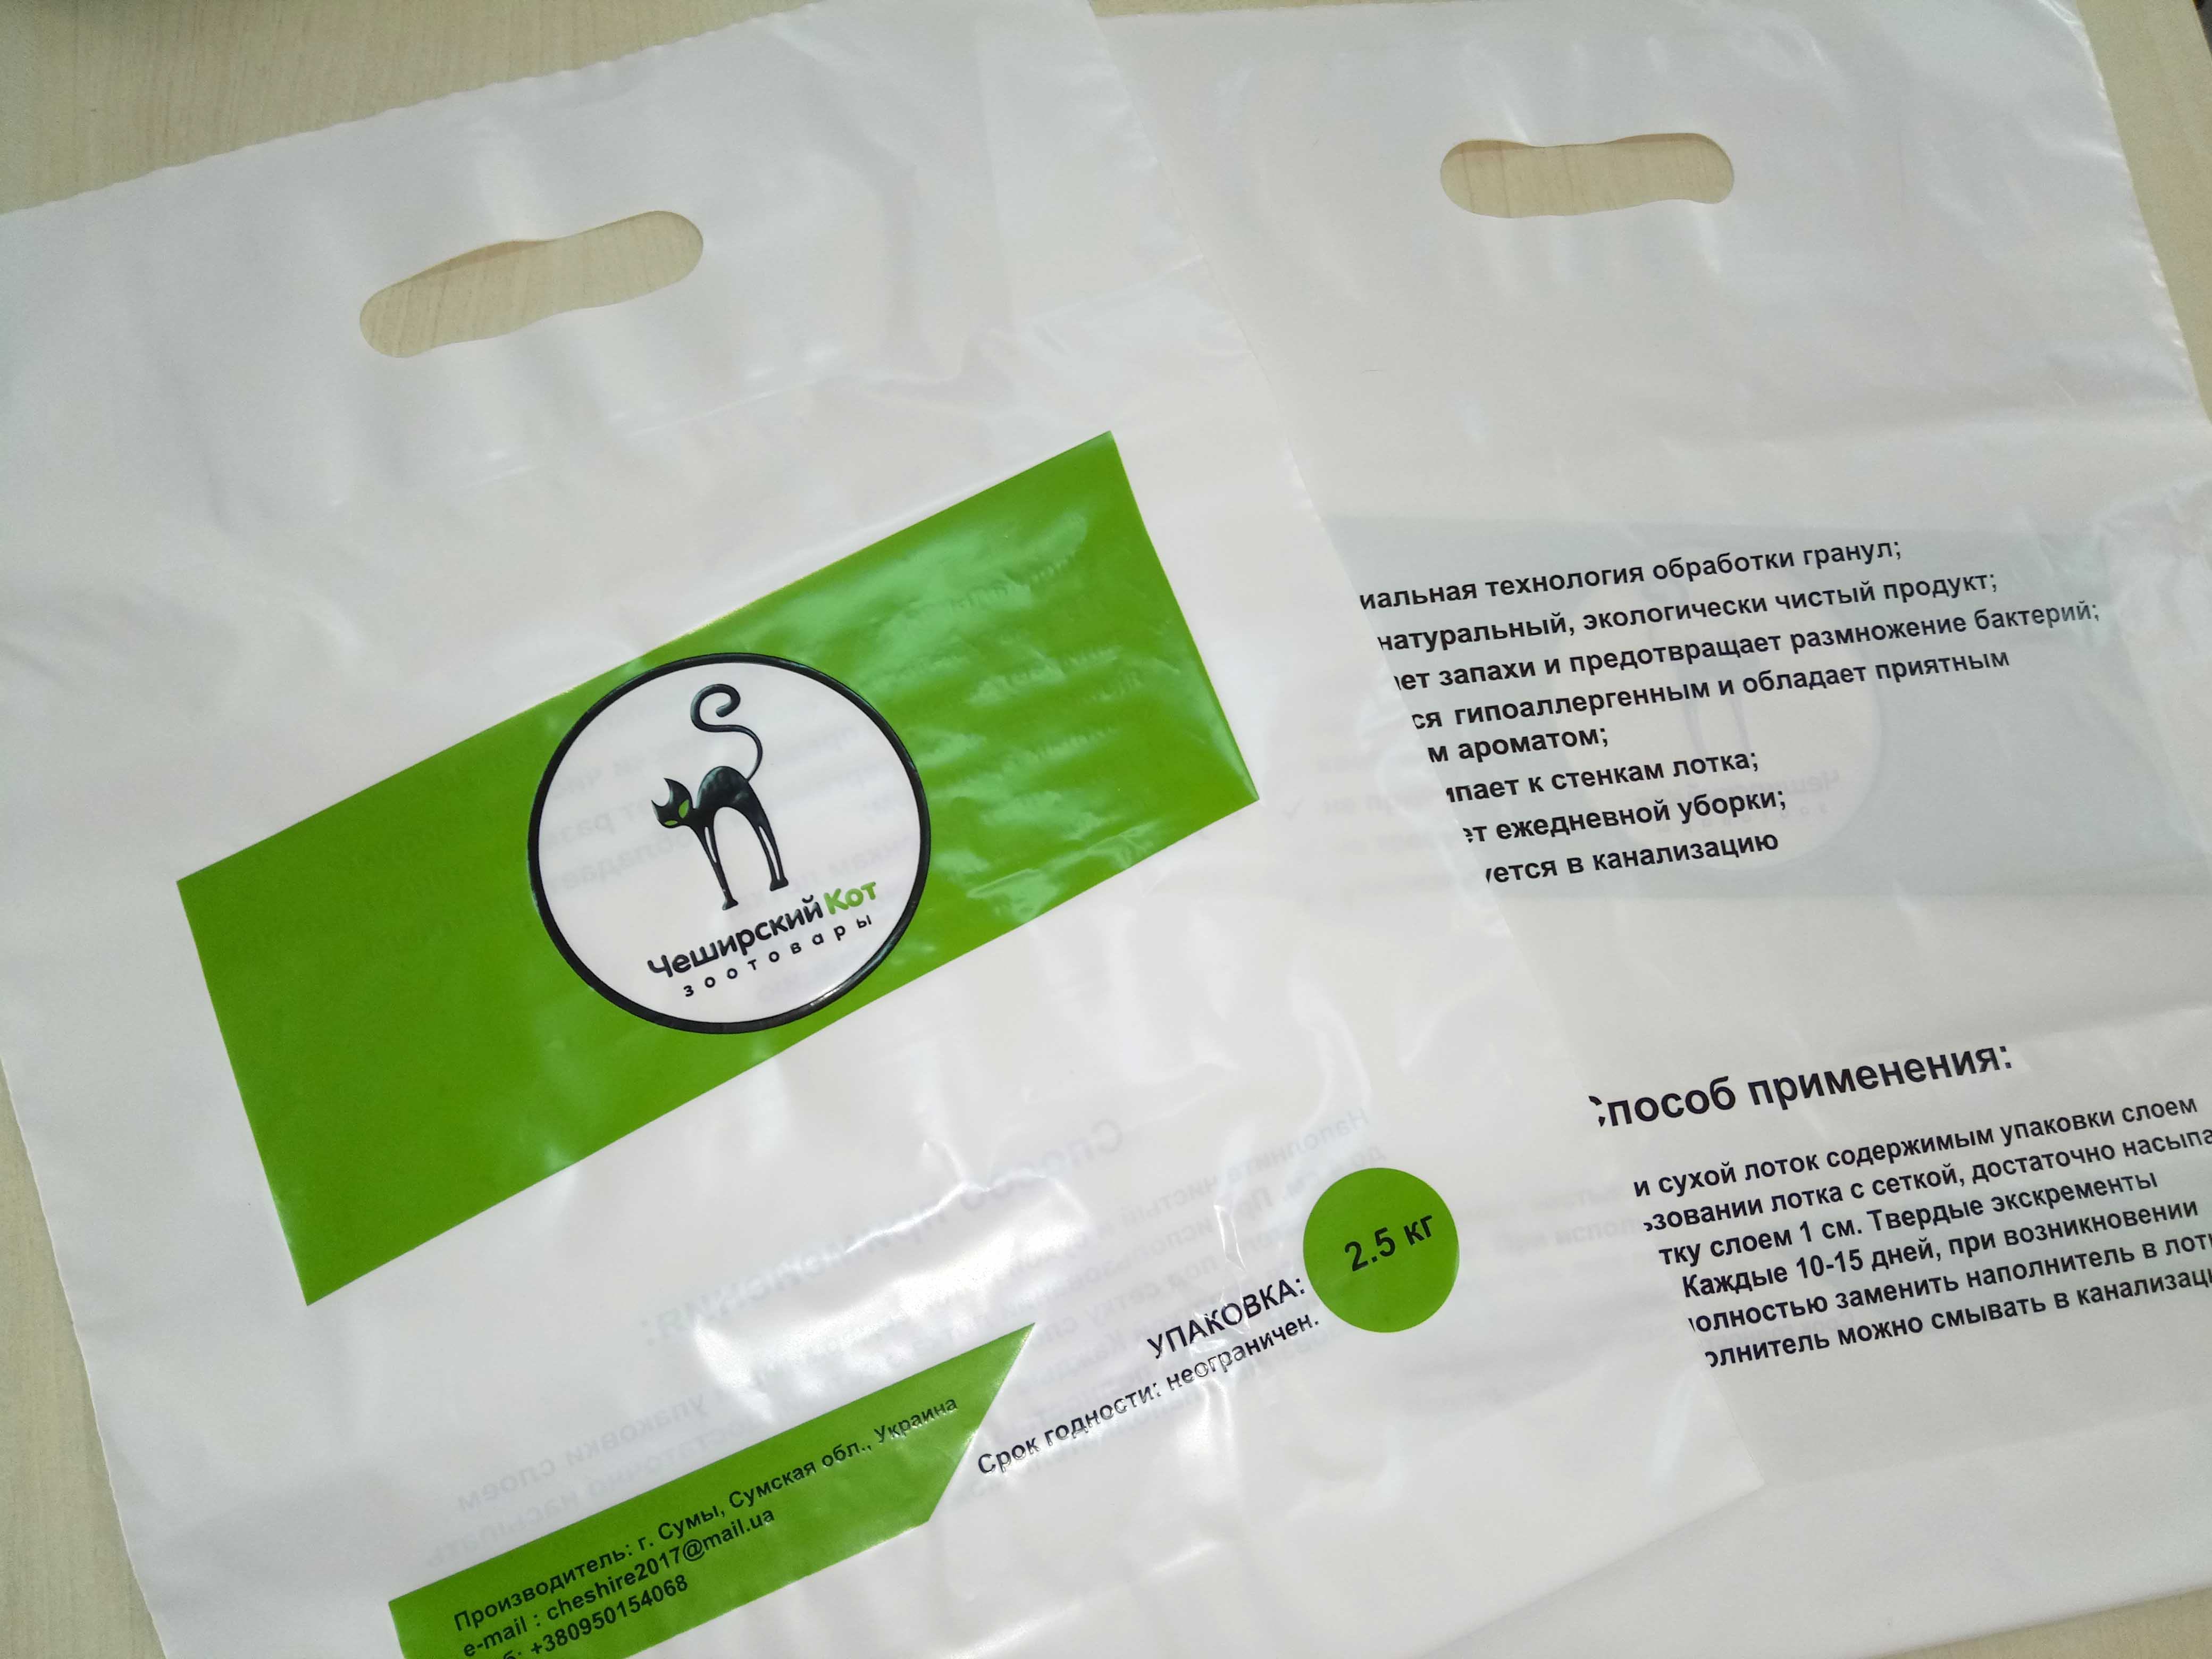 Оксо-разлагаемые биодобавки Chernigov Package - Фото Копия Изображение 002